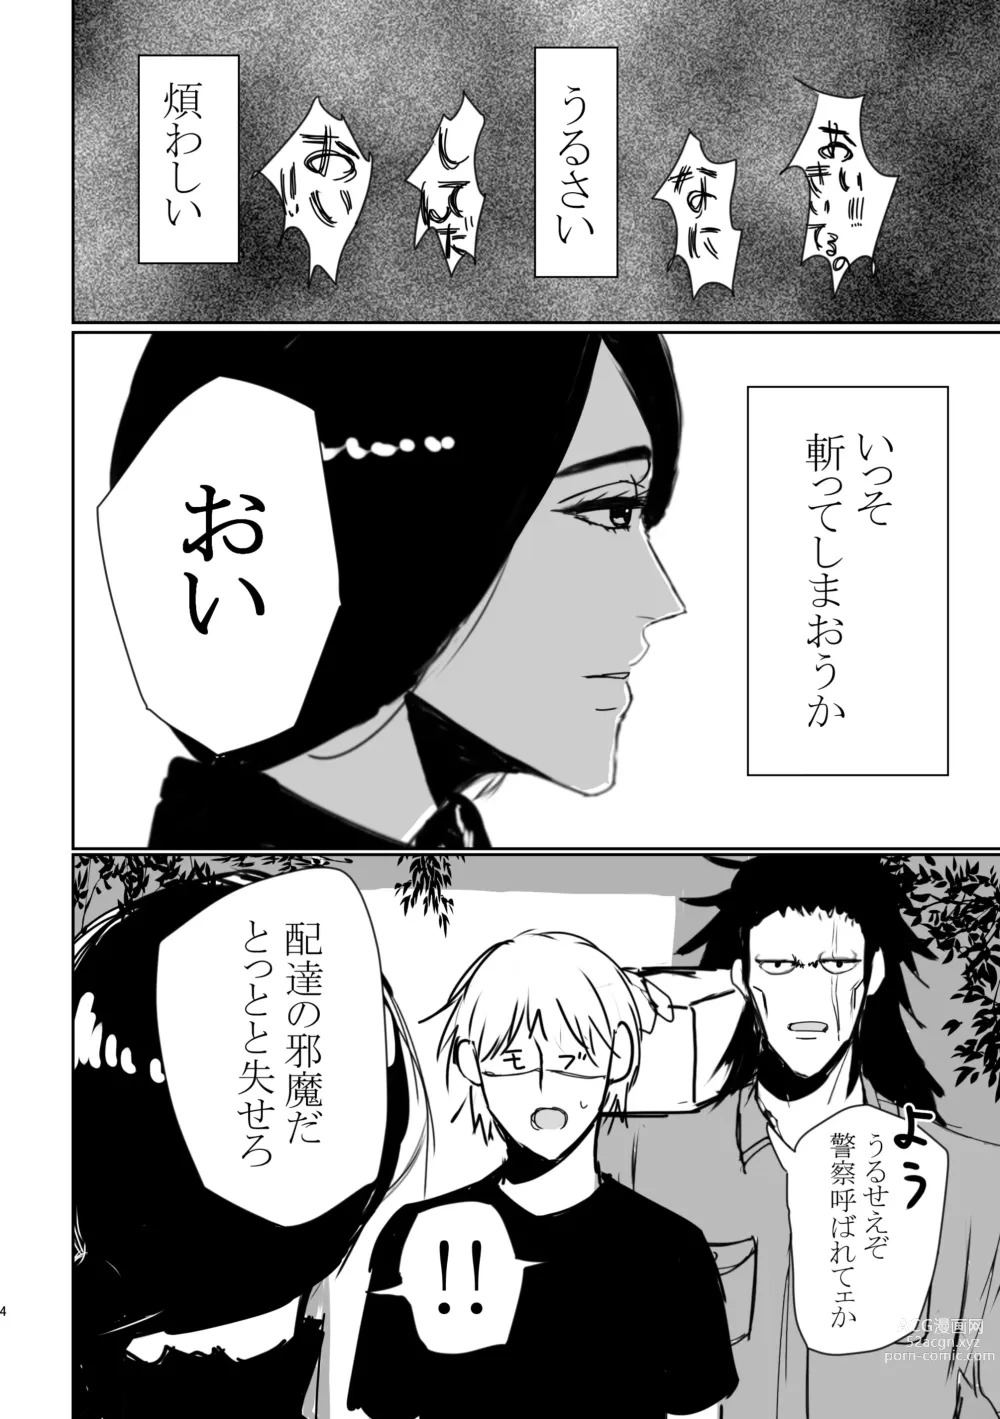 Page 3 of doujinshi Mebuki